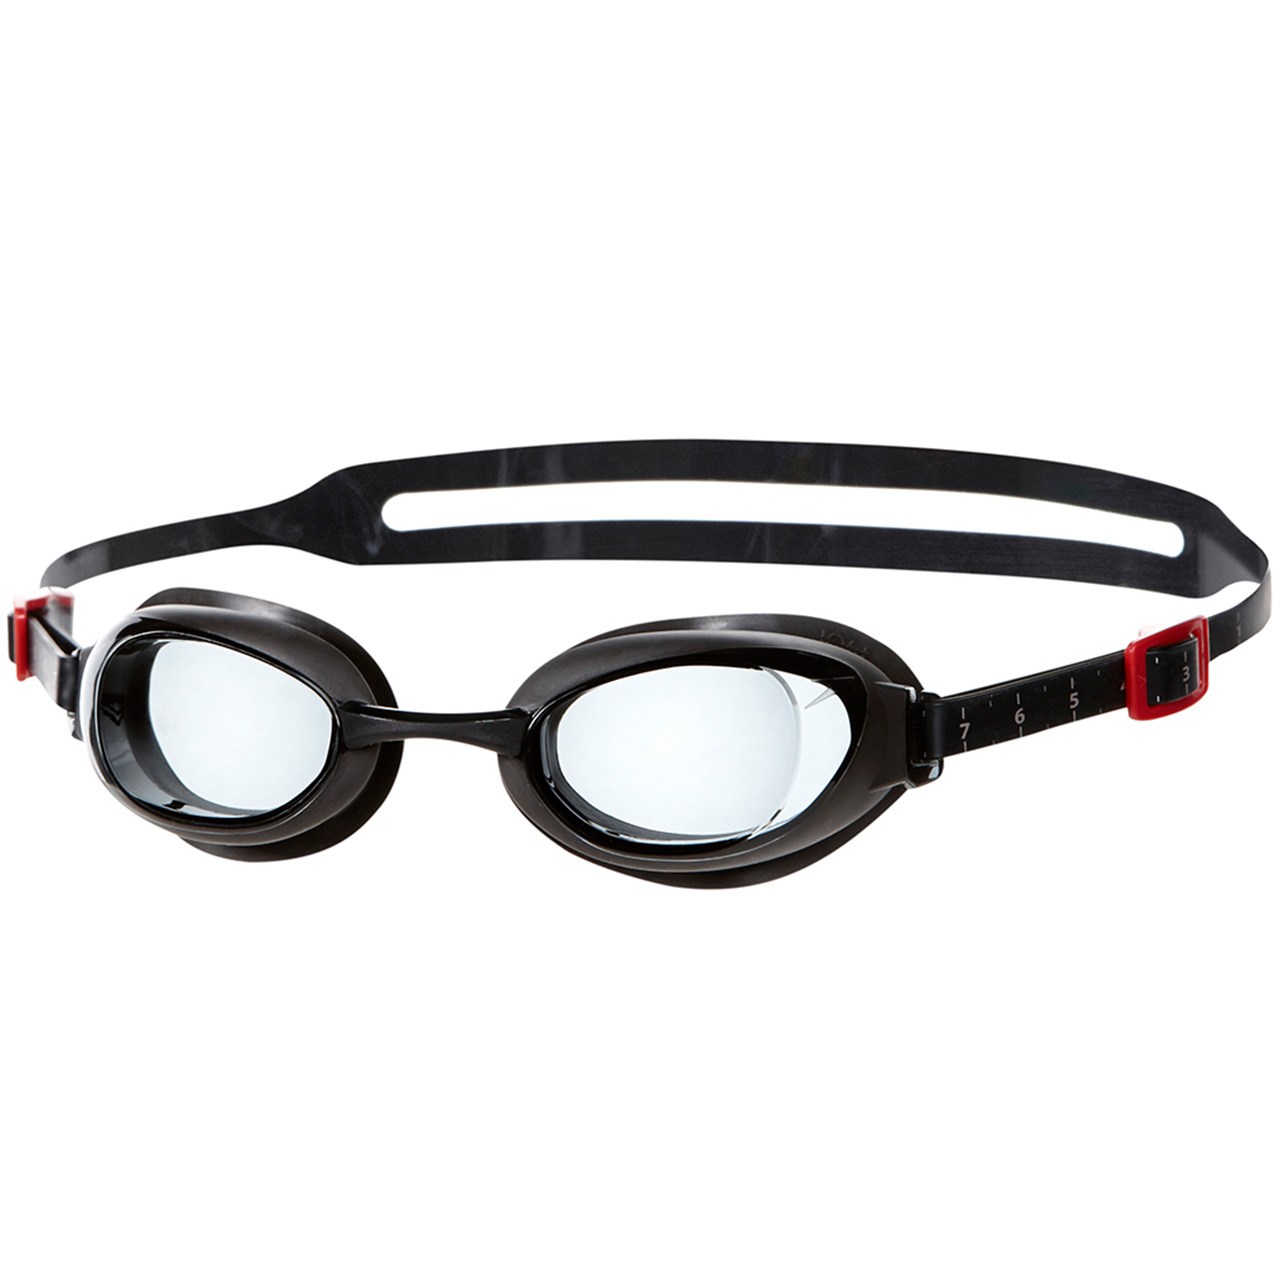 عینک شنای اسپیدو مدل Aquapure Prescription سایز 3.5